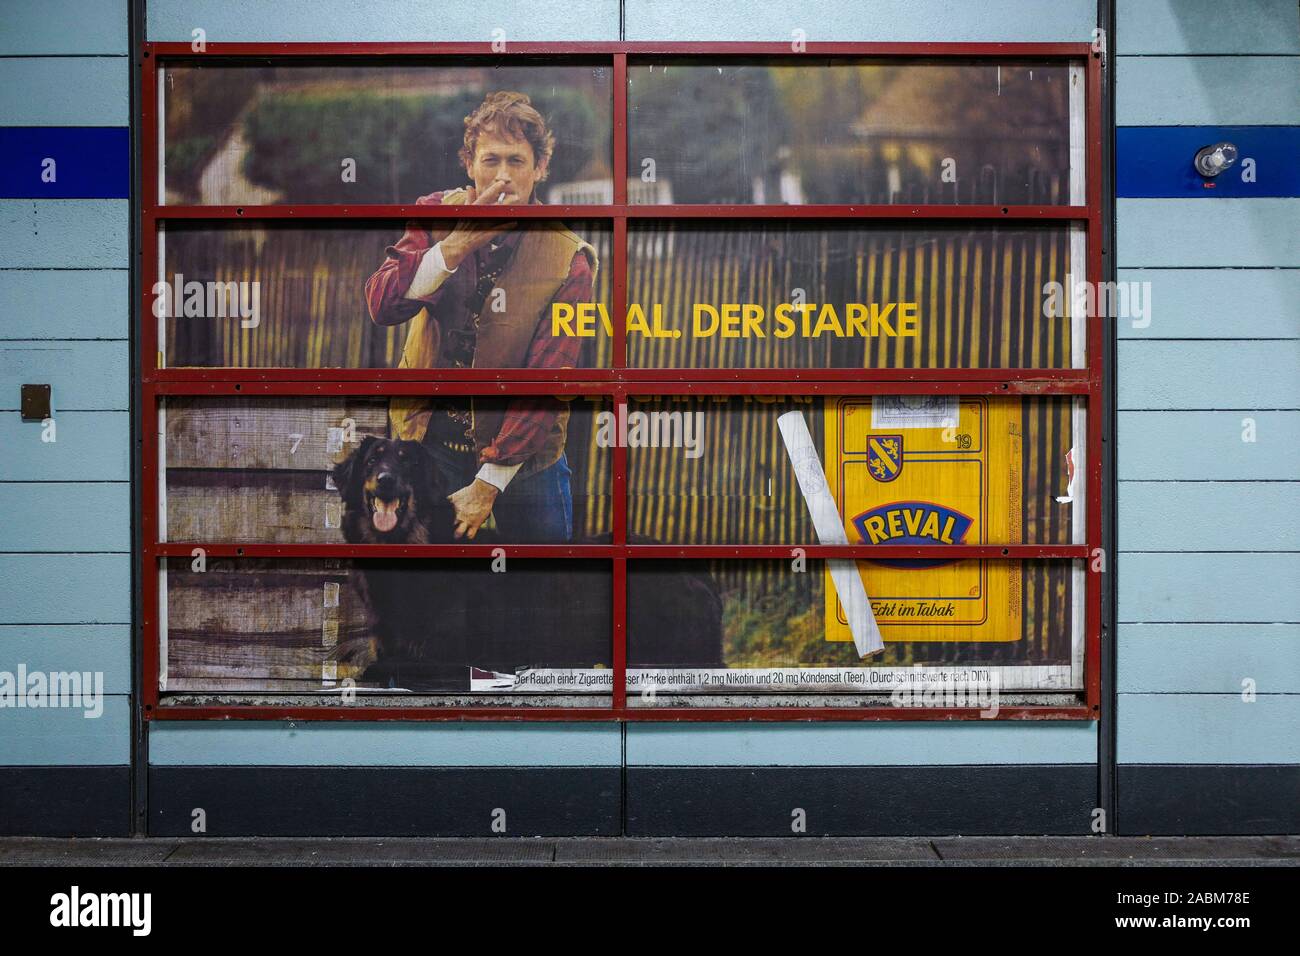 Alte Werbung Poster von der Zigarettenmarke Reval, die hinter einem demontiert Werbefläche an der Münchner U-Bahn station Nordfriedhof erschienen. [Automatisierte Übersetzung] Stockfoto